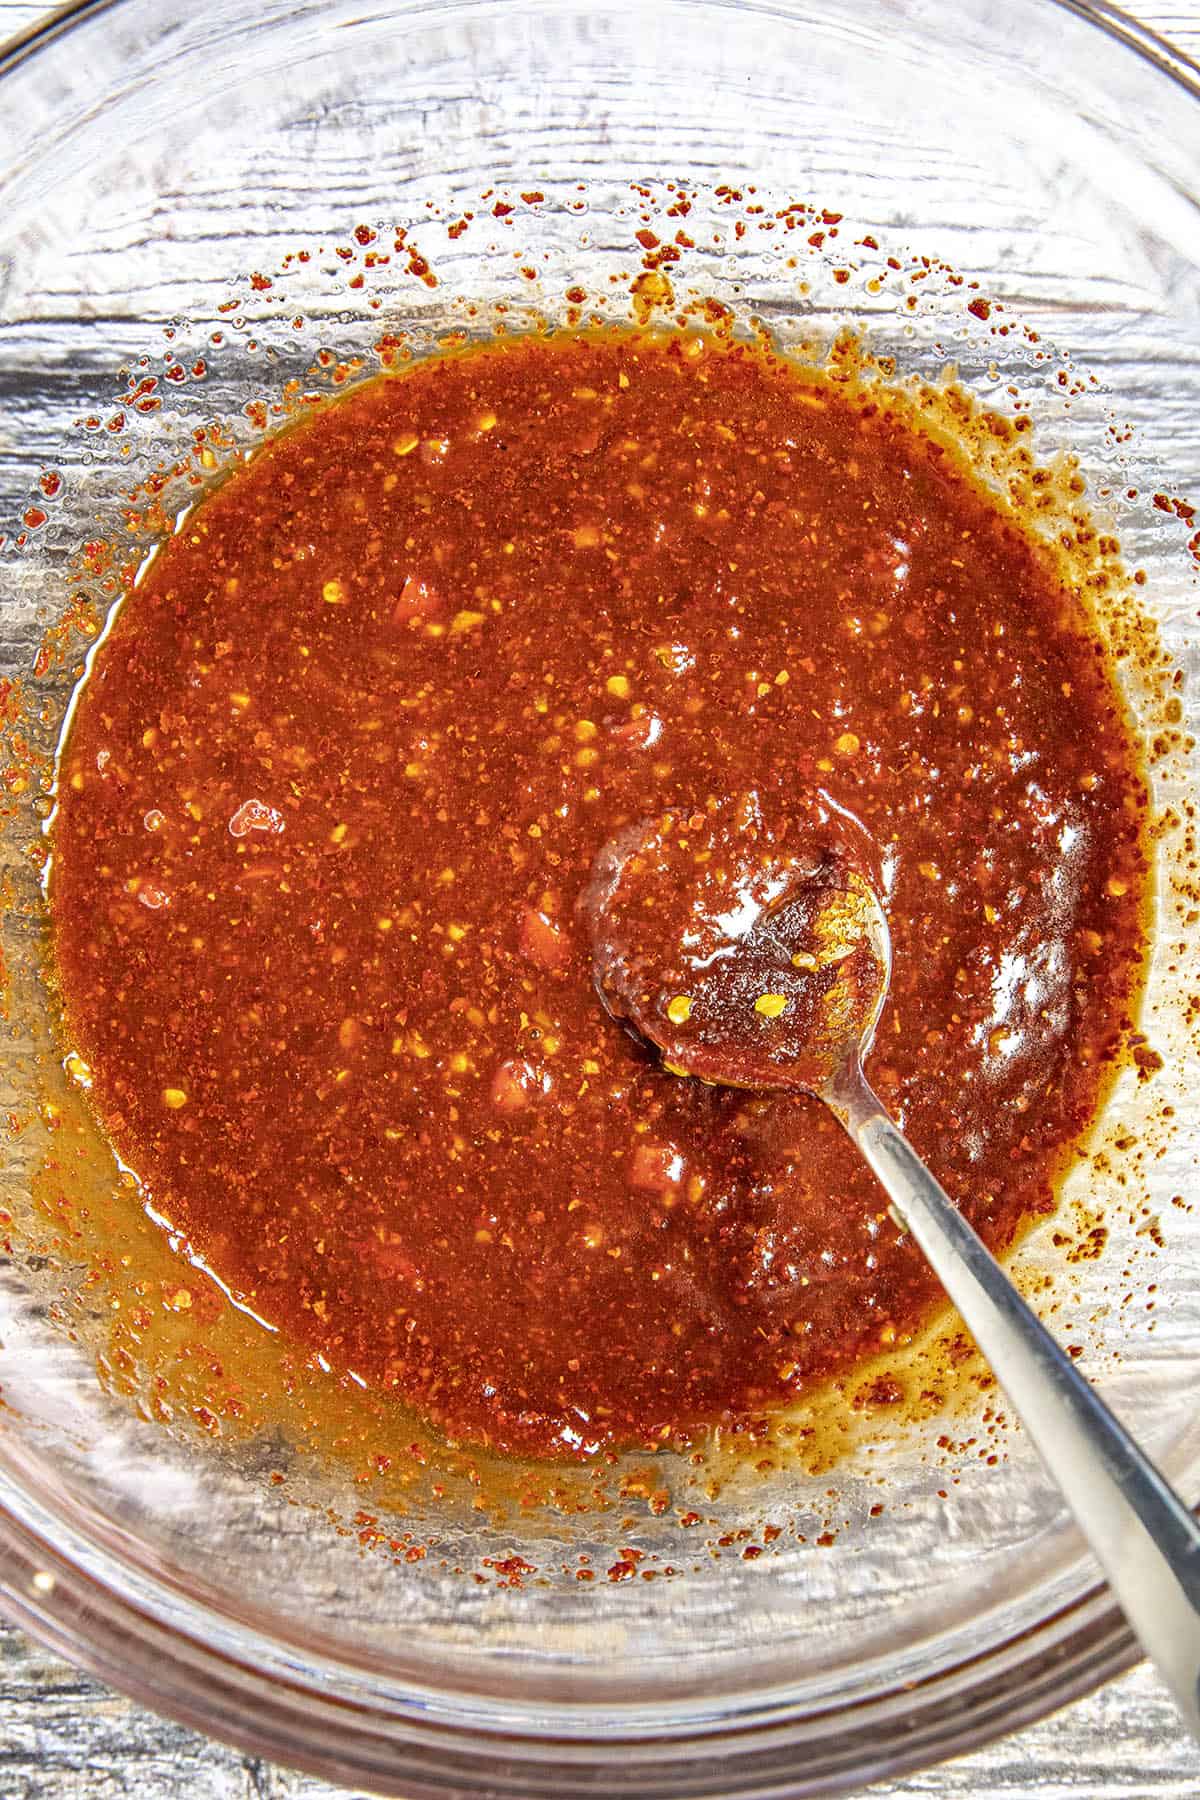 Sauce for making buldak